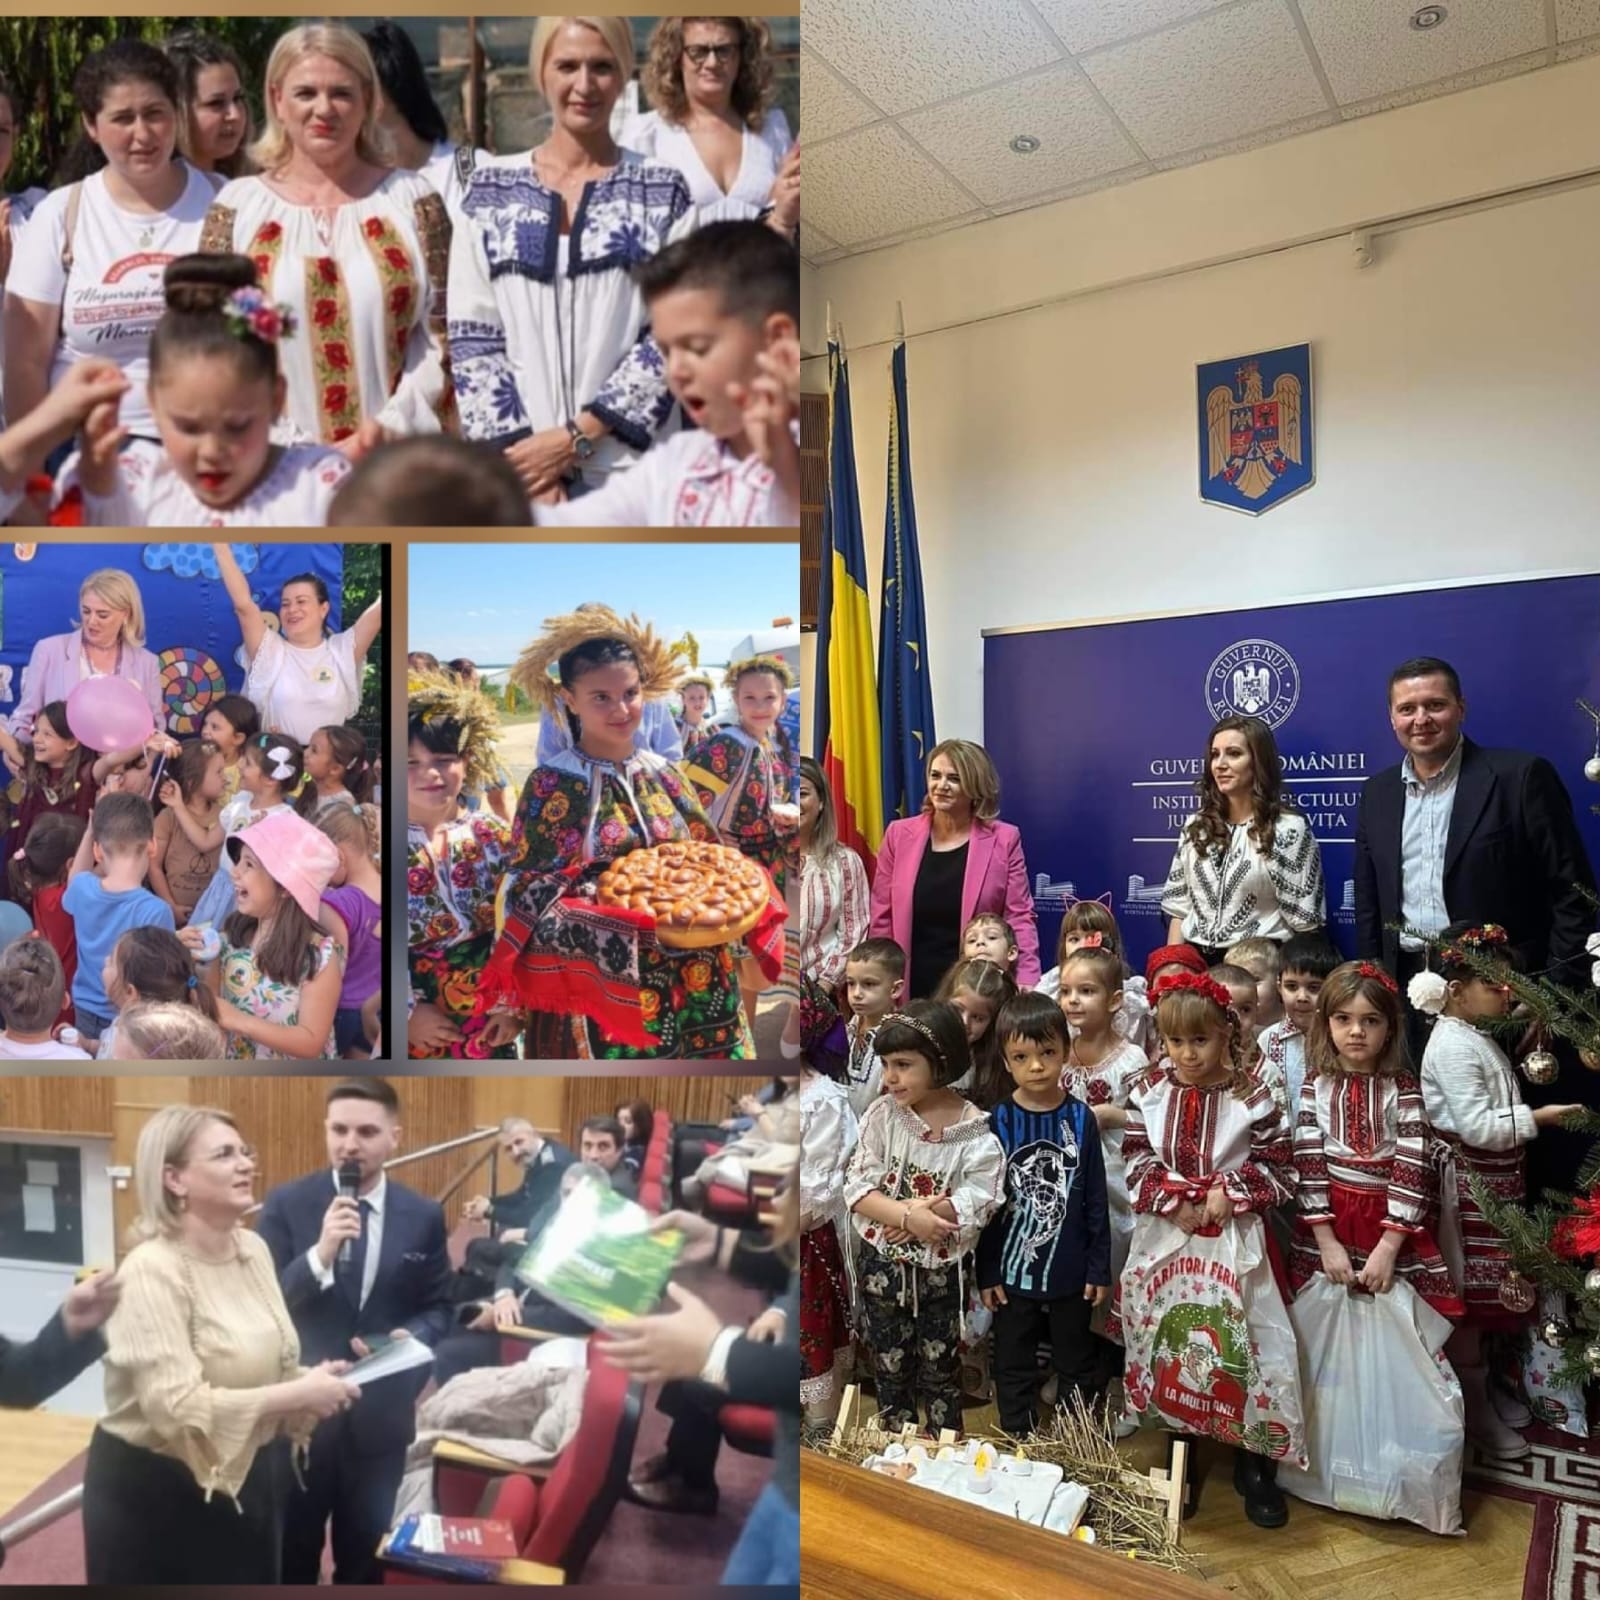 Claudia Gilia, prefectul județului Dâmbovița: Astăzi sărbătorim Ziua Culturii Naționale, o ocazie specială de a recunoaște și de a aprecia bogăția și diversitatea culturii noastre. Urez „La mulți ani!” tuturor creatorilor de cultură și valori!